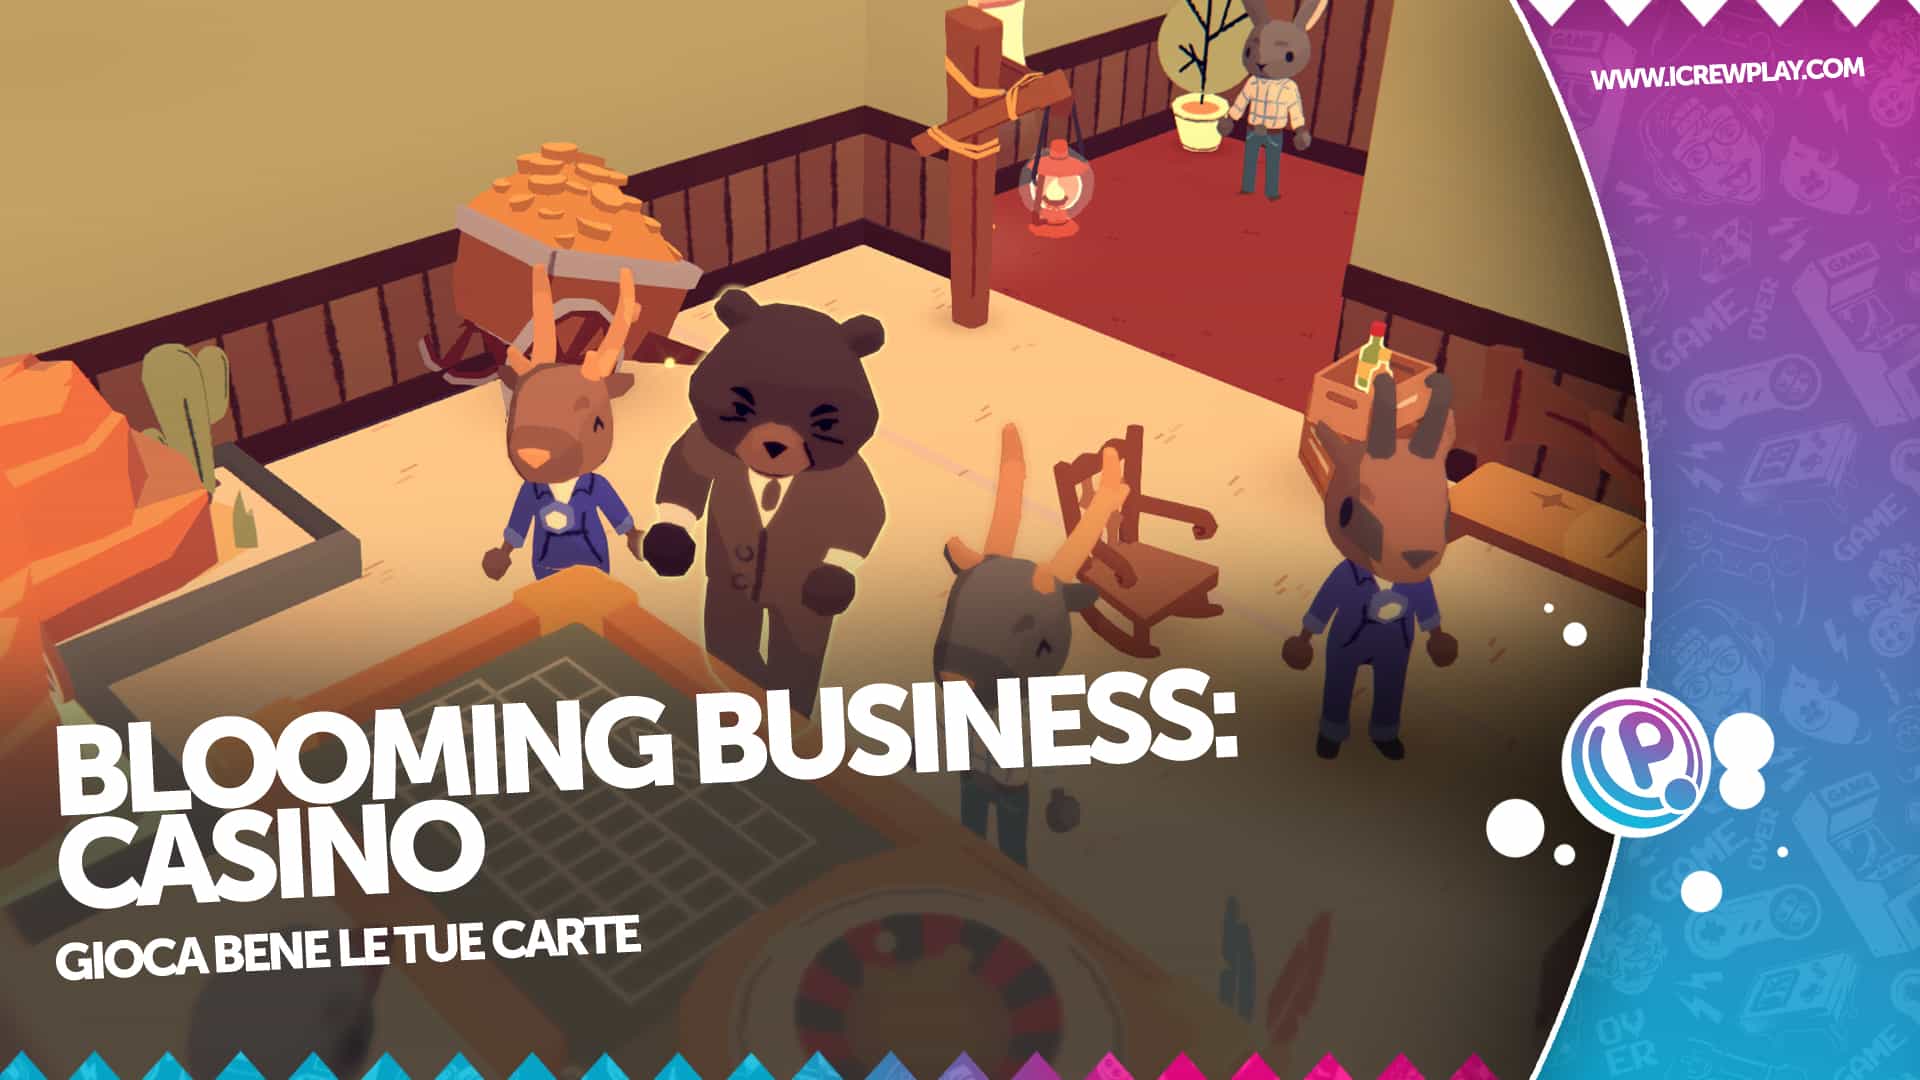 Blooming Business: Casino, pareri sulla demo 2